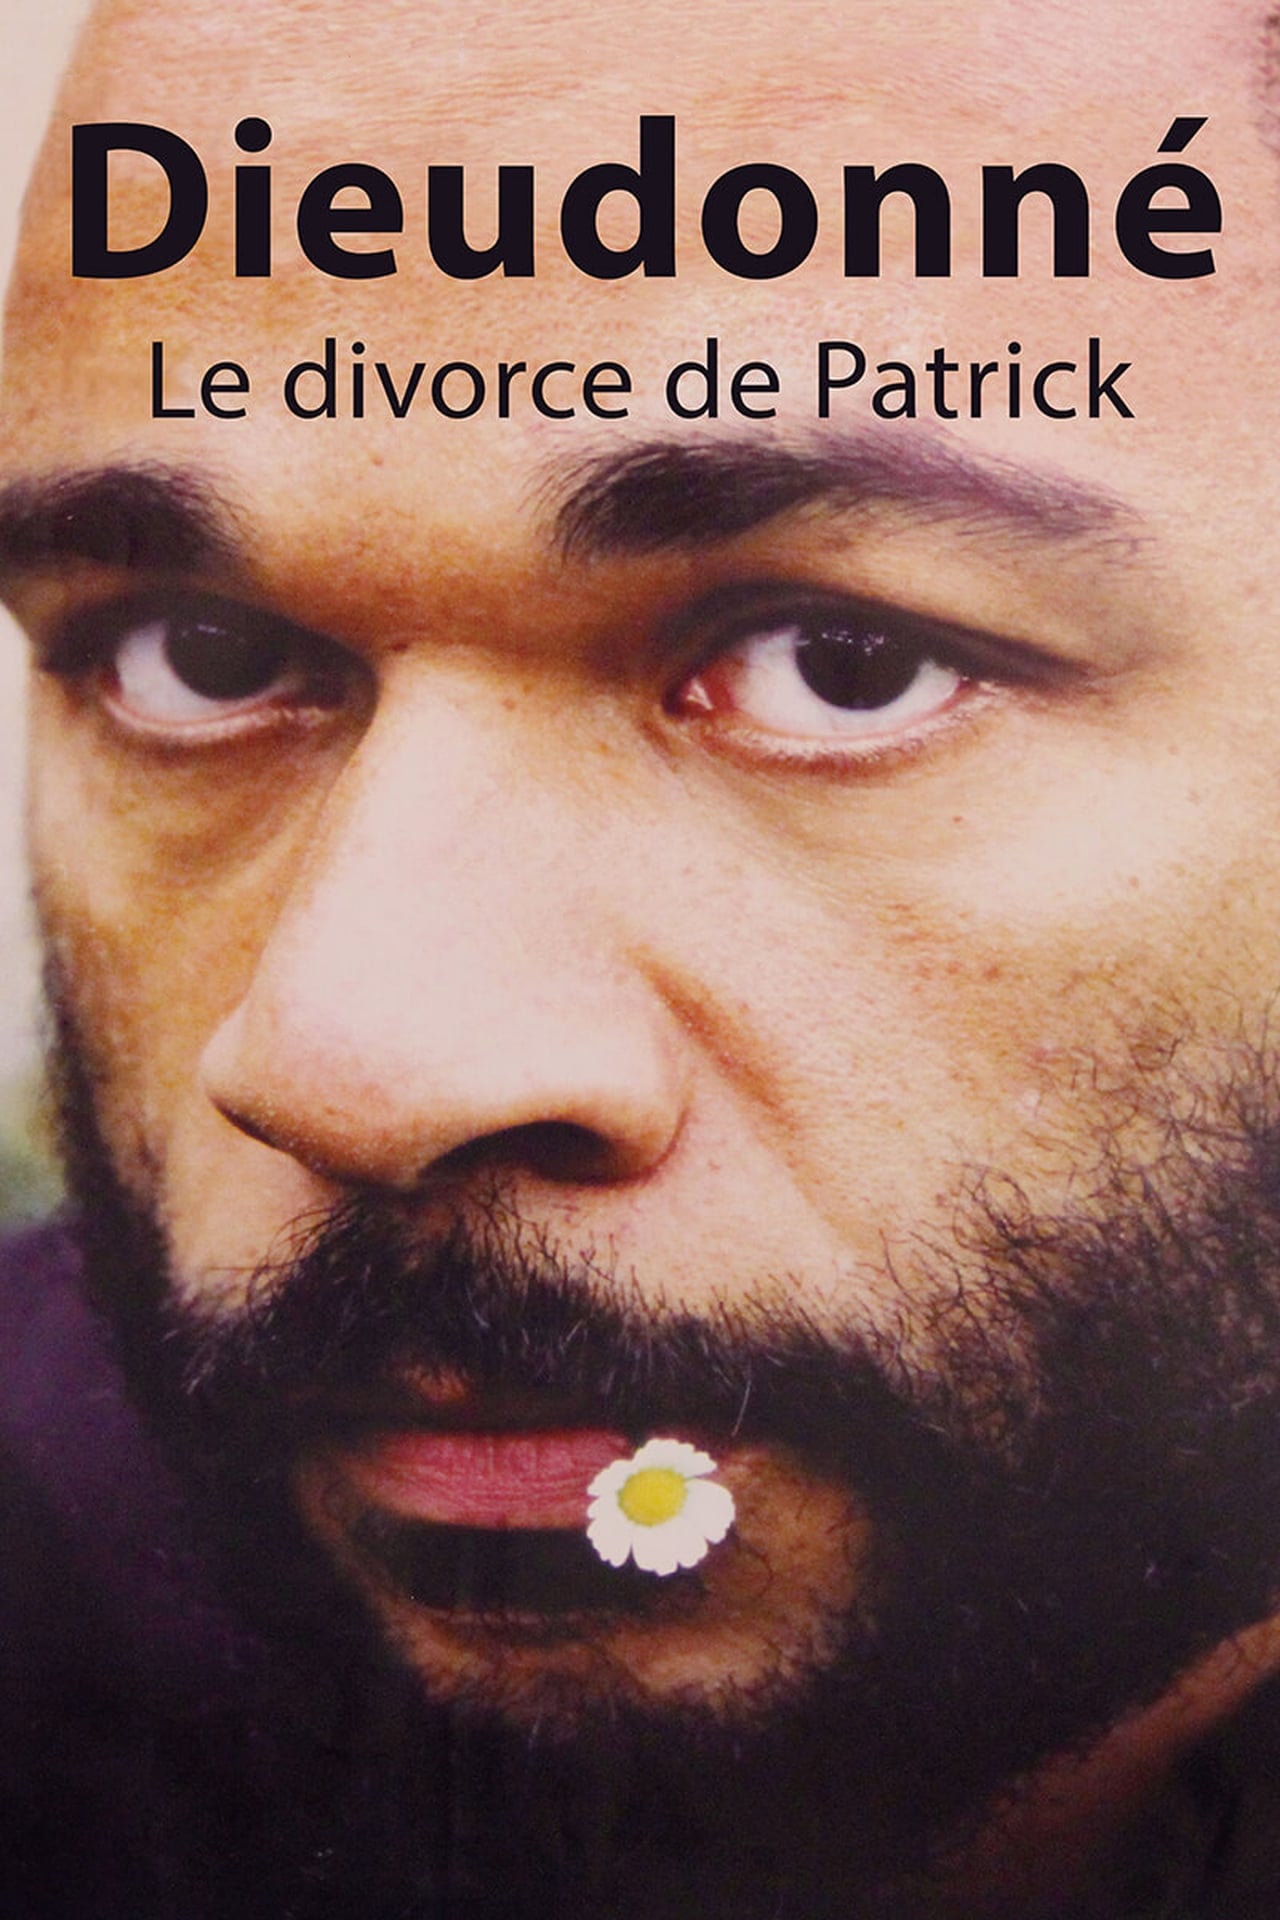 Le divorce de Patrick (2003)